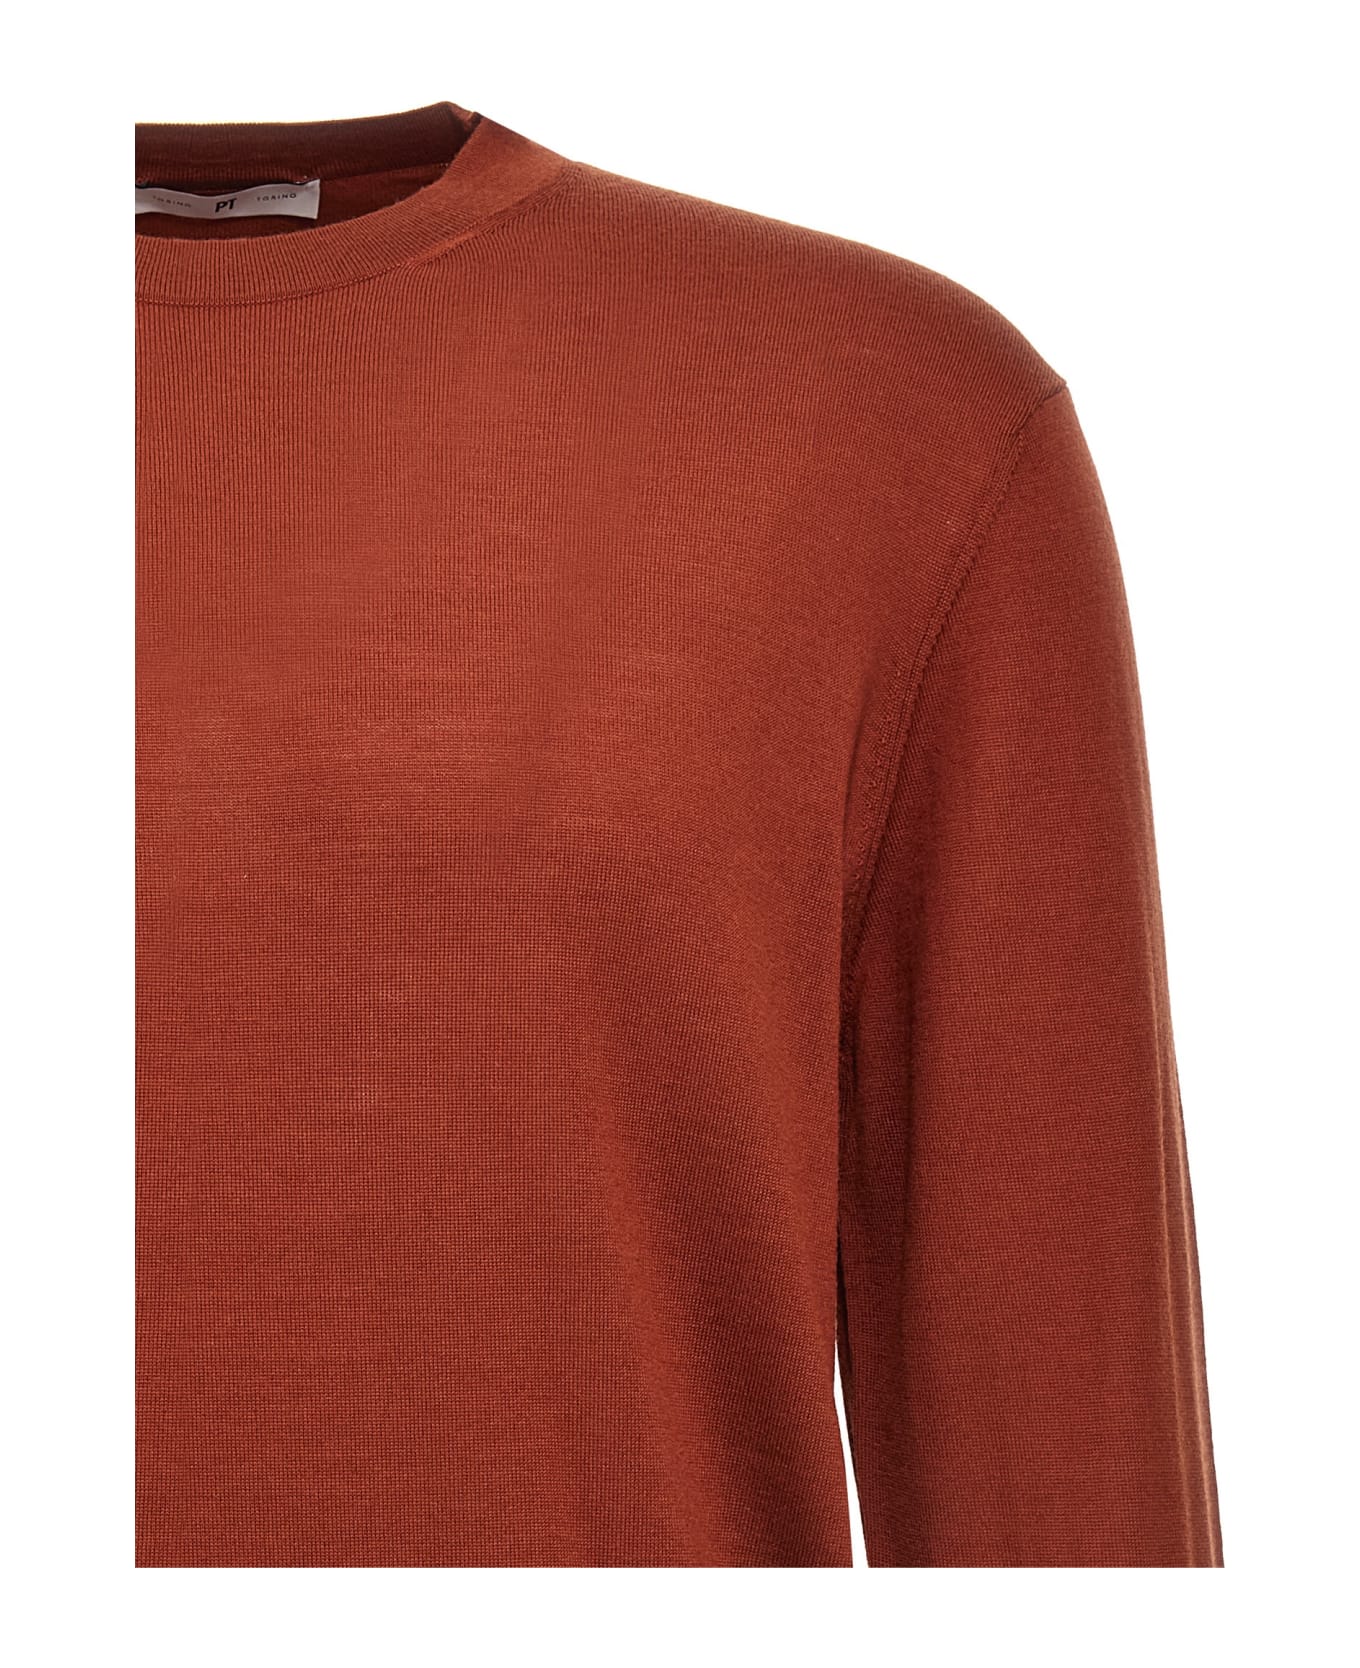 PT Torino Merino Wool Sweater - Red